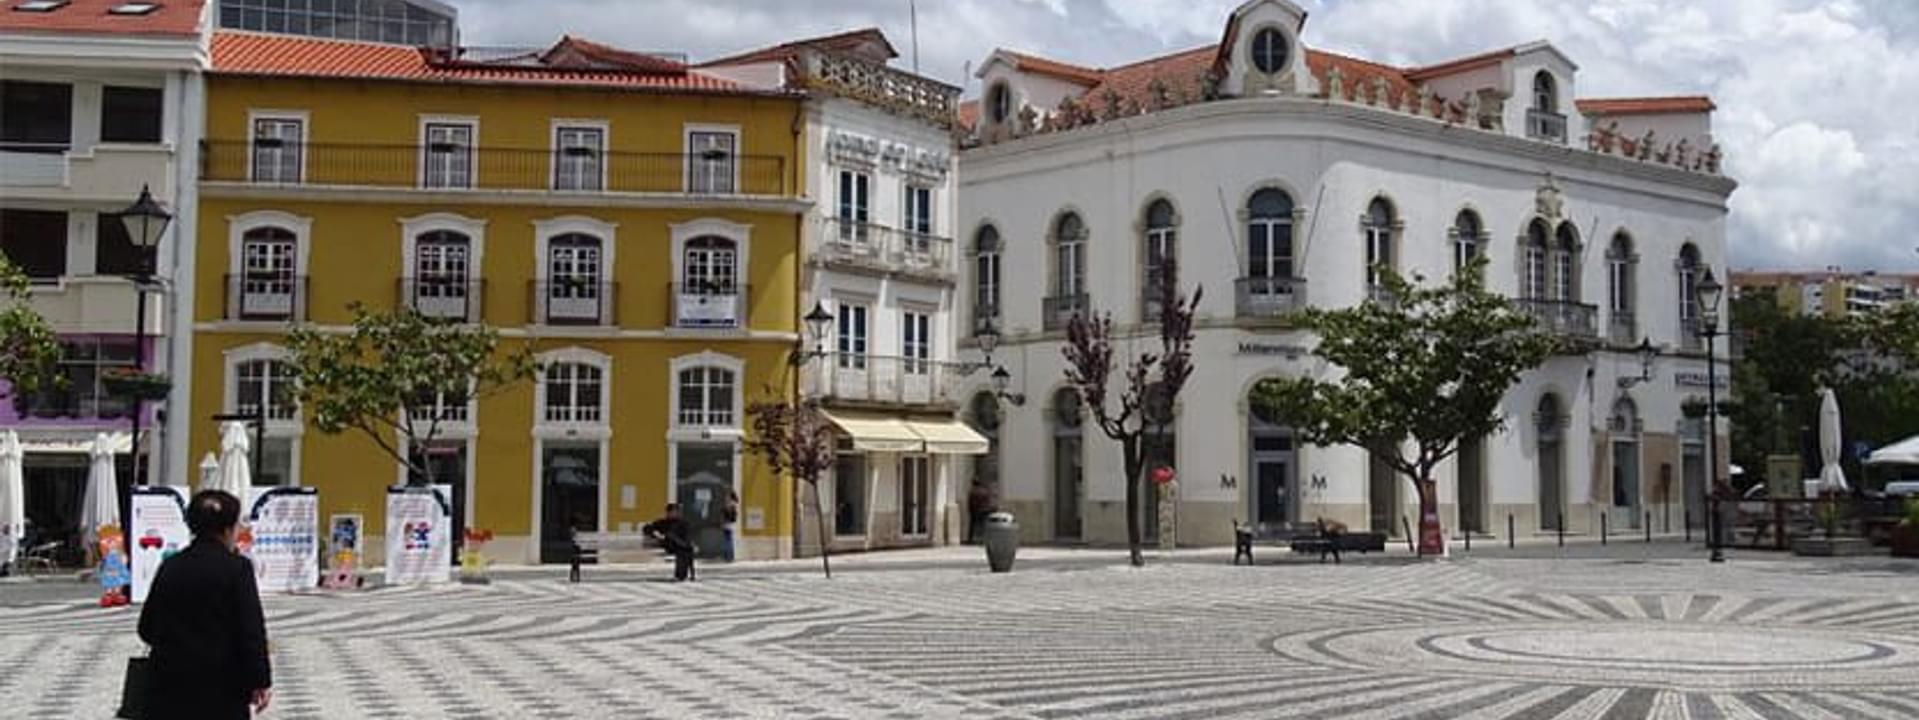 Rodrigues Lobo-Platz